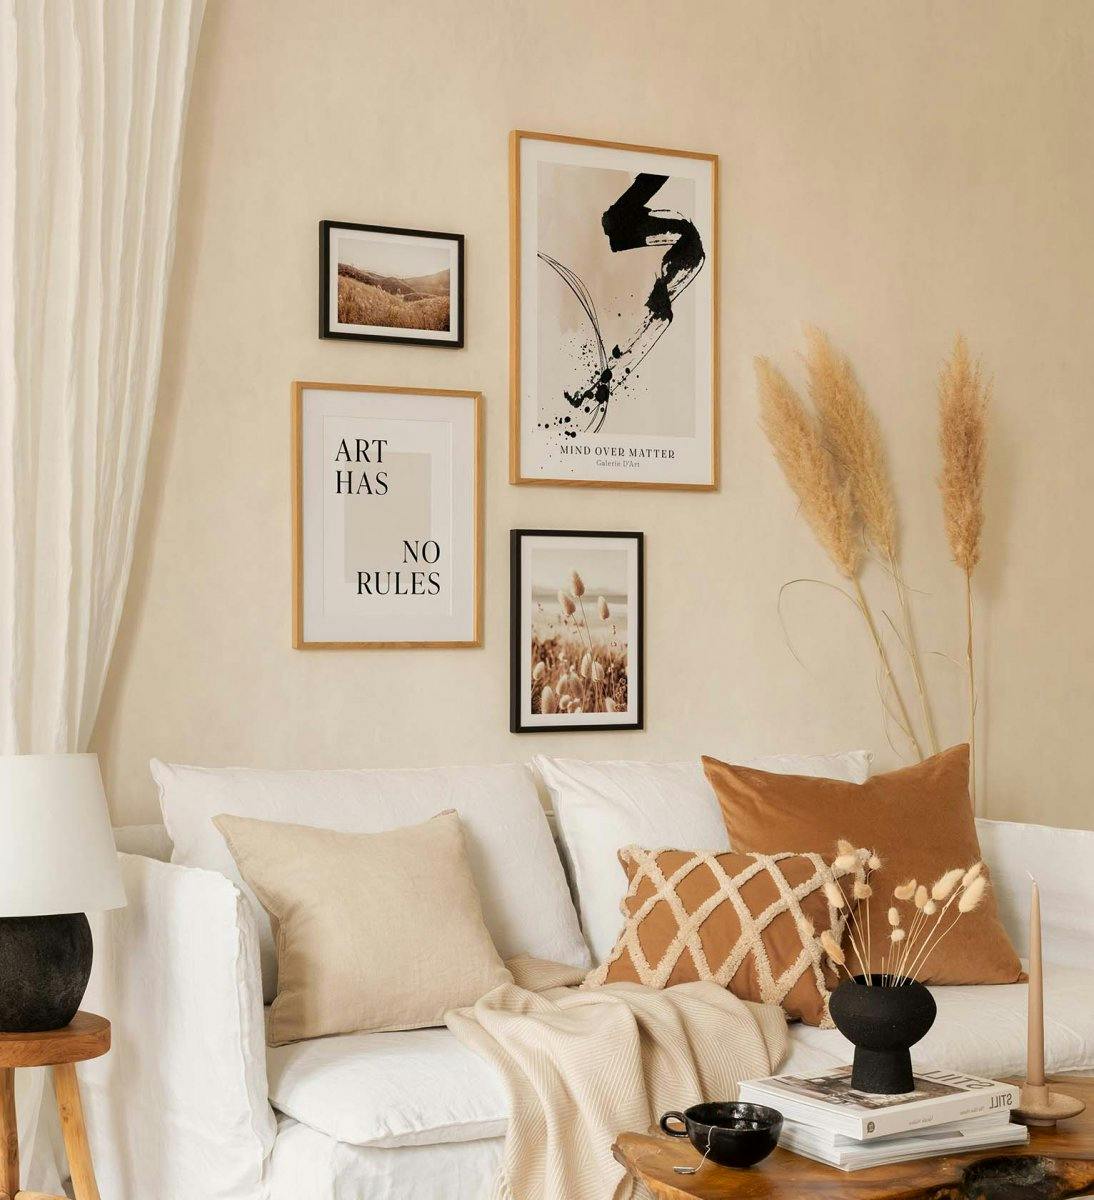 Eine modische Bilderwand mit Fotografien kombiniert mit Typografie in gelassenen Farben für das Wohnzimmer